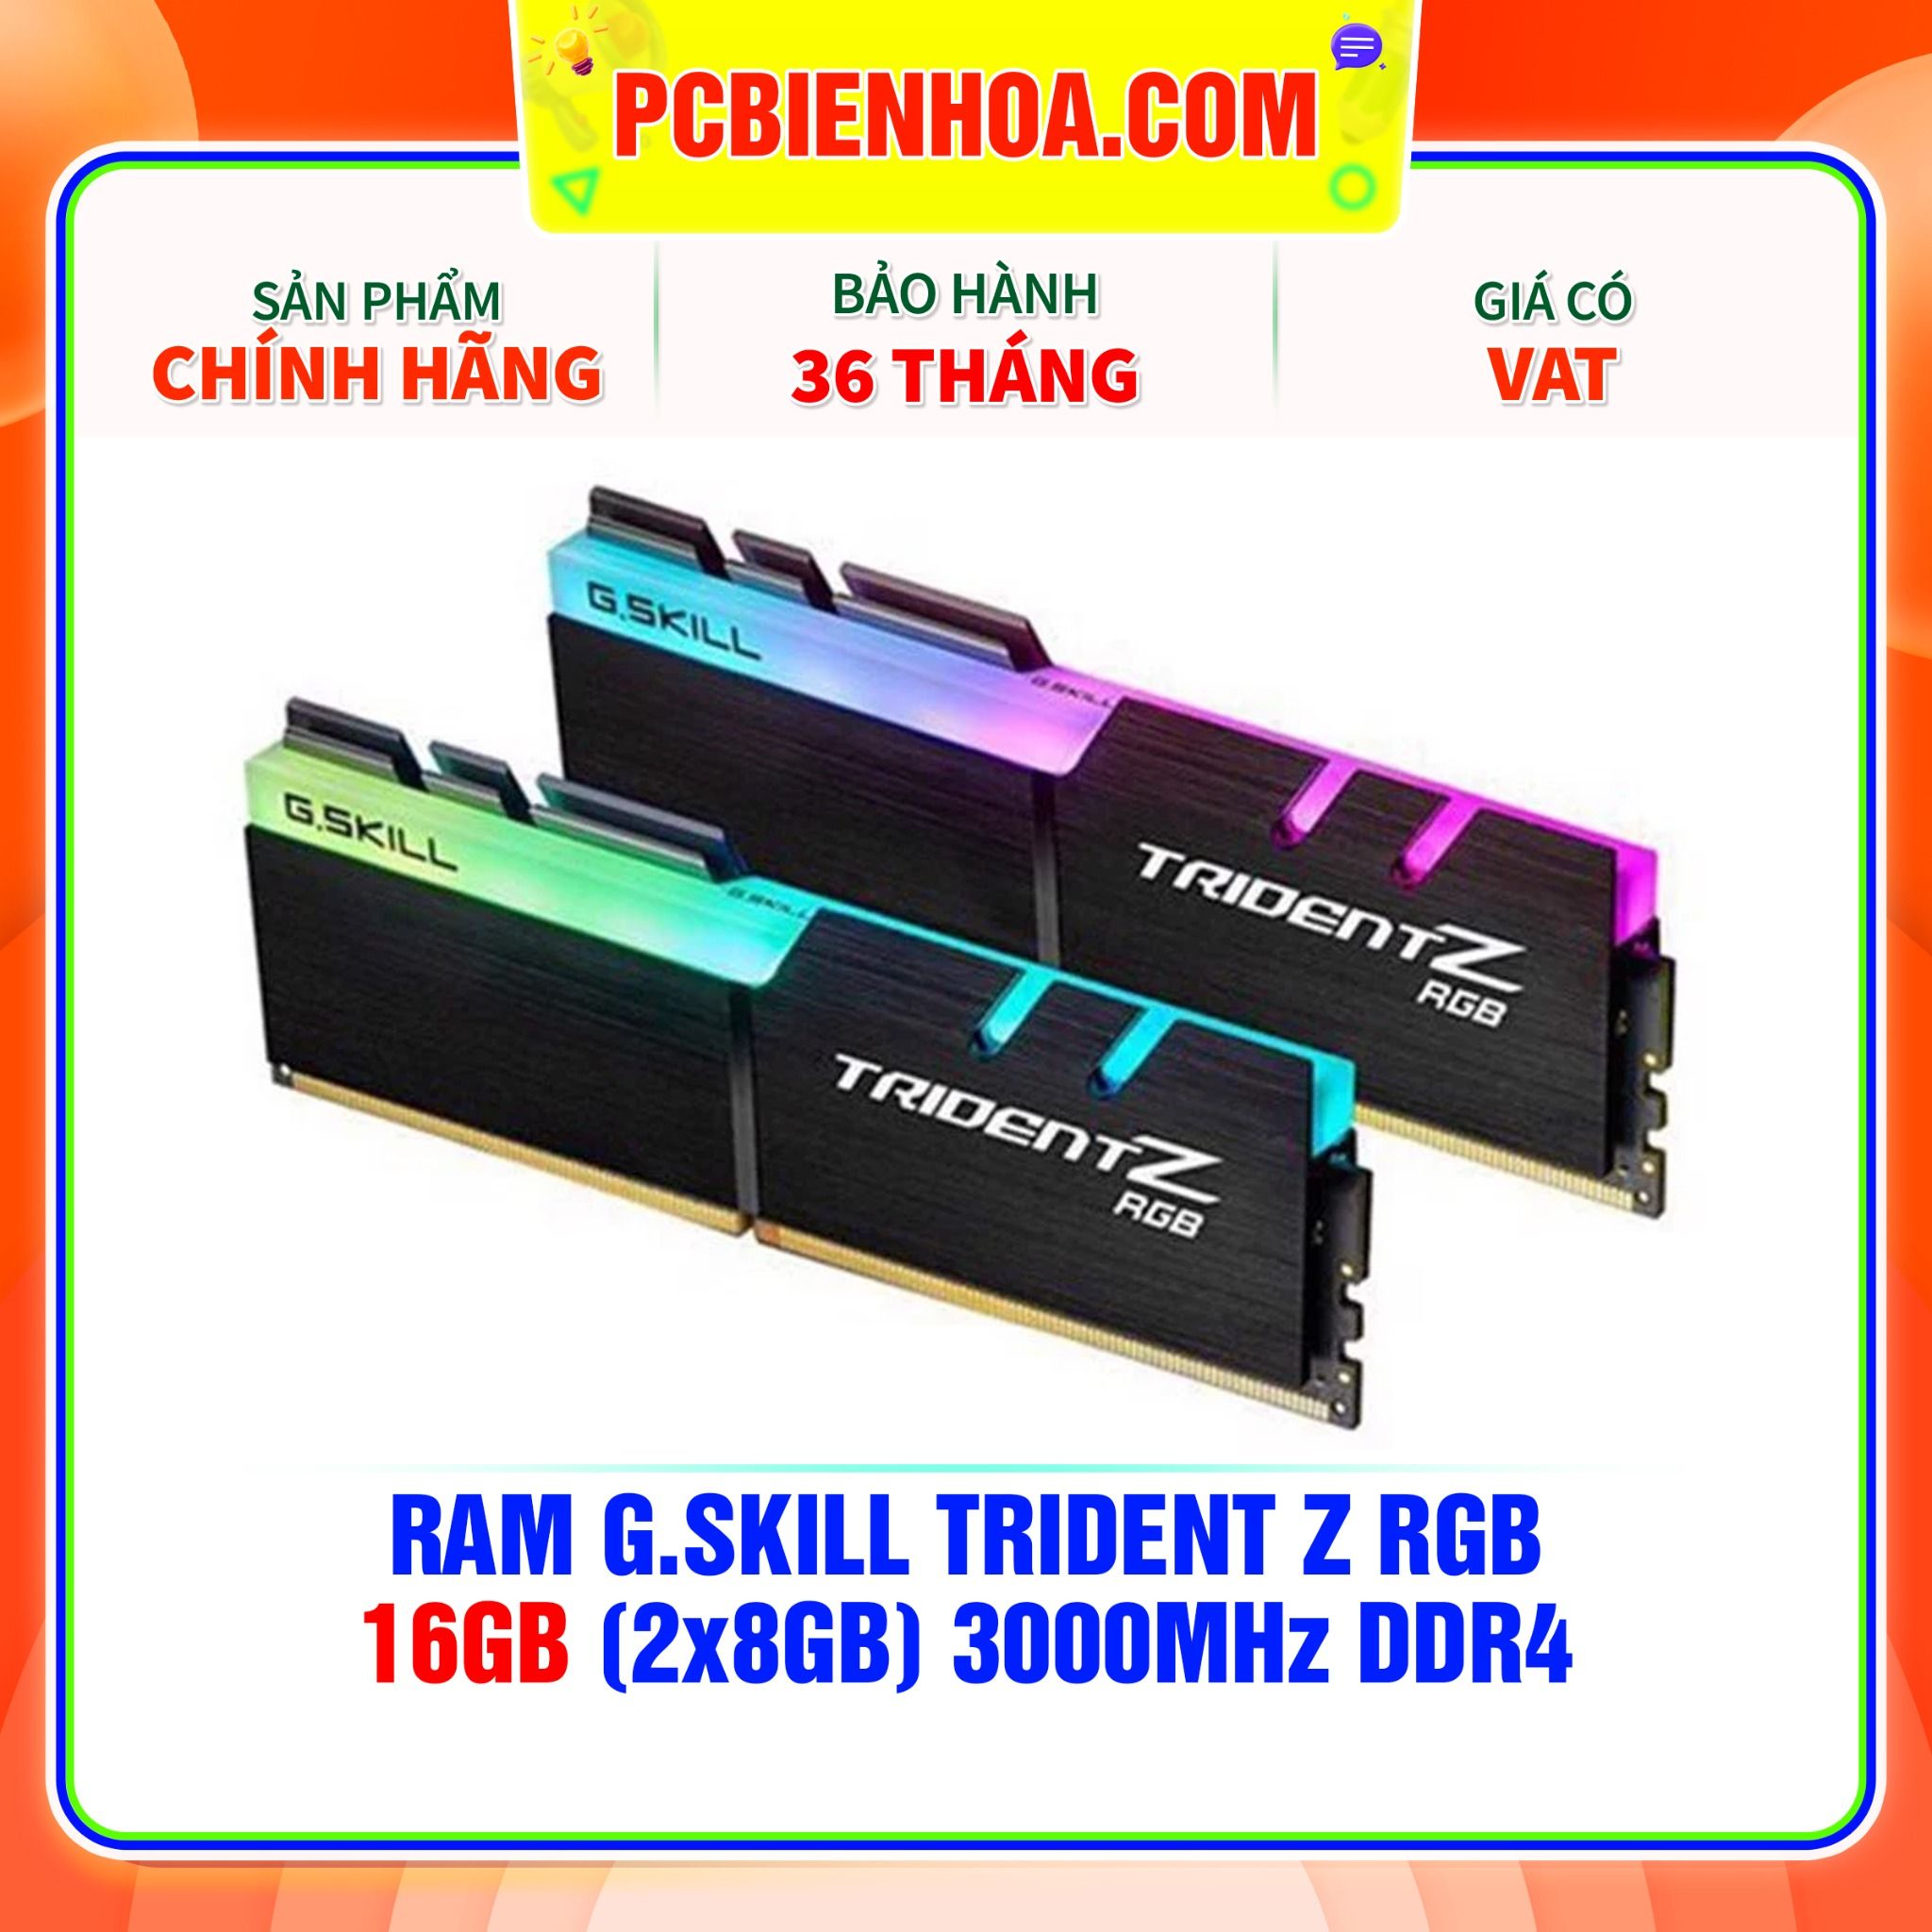  Ram G.Skill Trident Z RGB 16GB (2x8GB) 3000Mhz DDR4 (F4-3000C16D-16GTZR) 